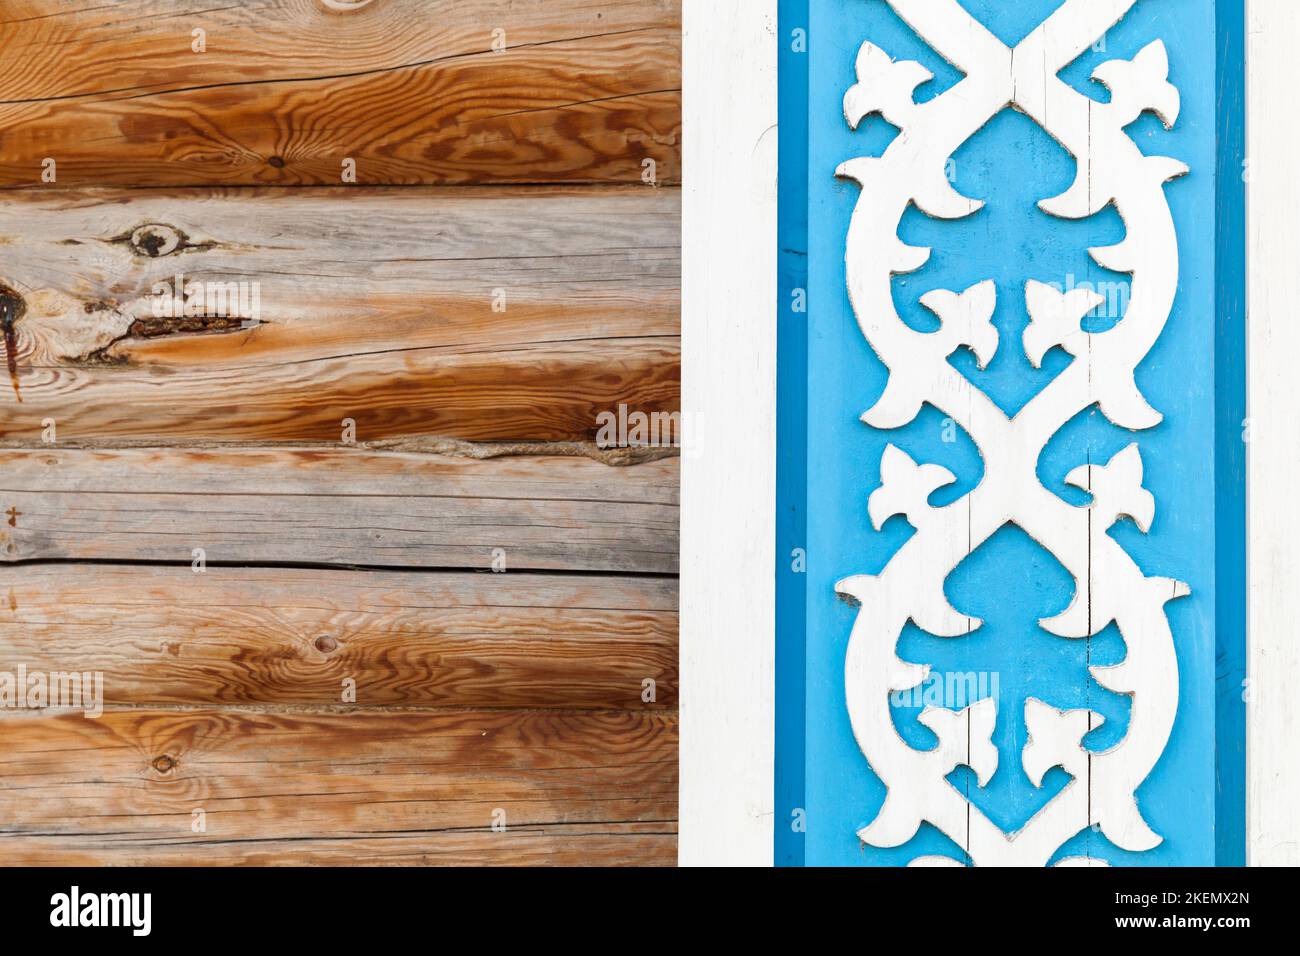 Vecchi elementi decorativi in legno sulla parete della casa rurale. Decorazioni in tatar. Kazan, Russia Foto Stock